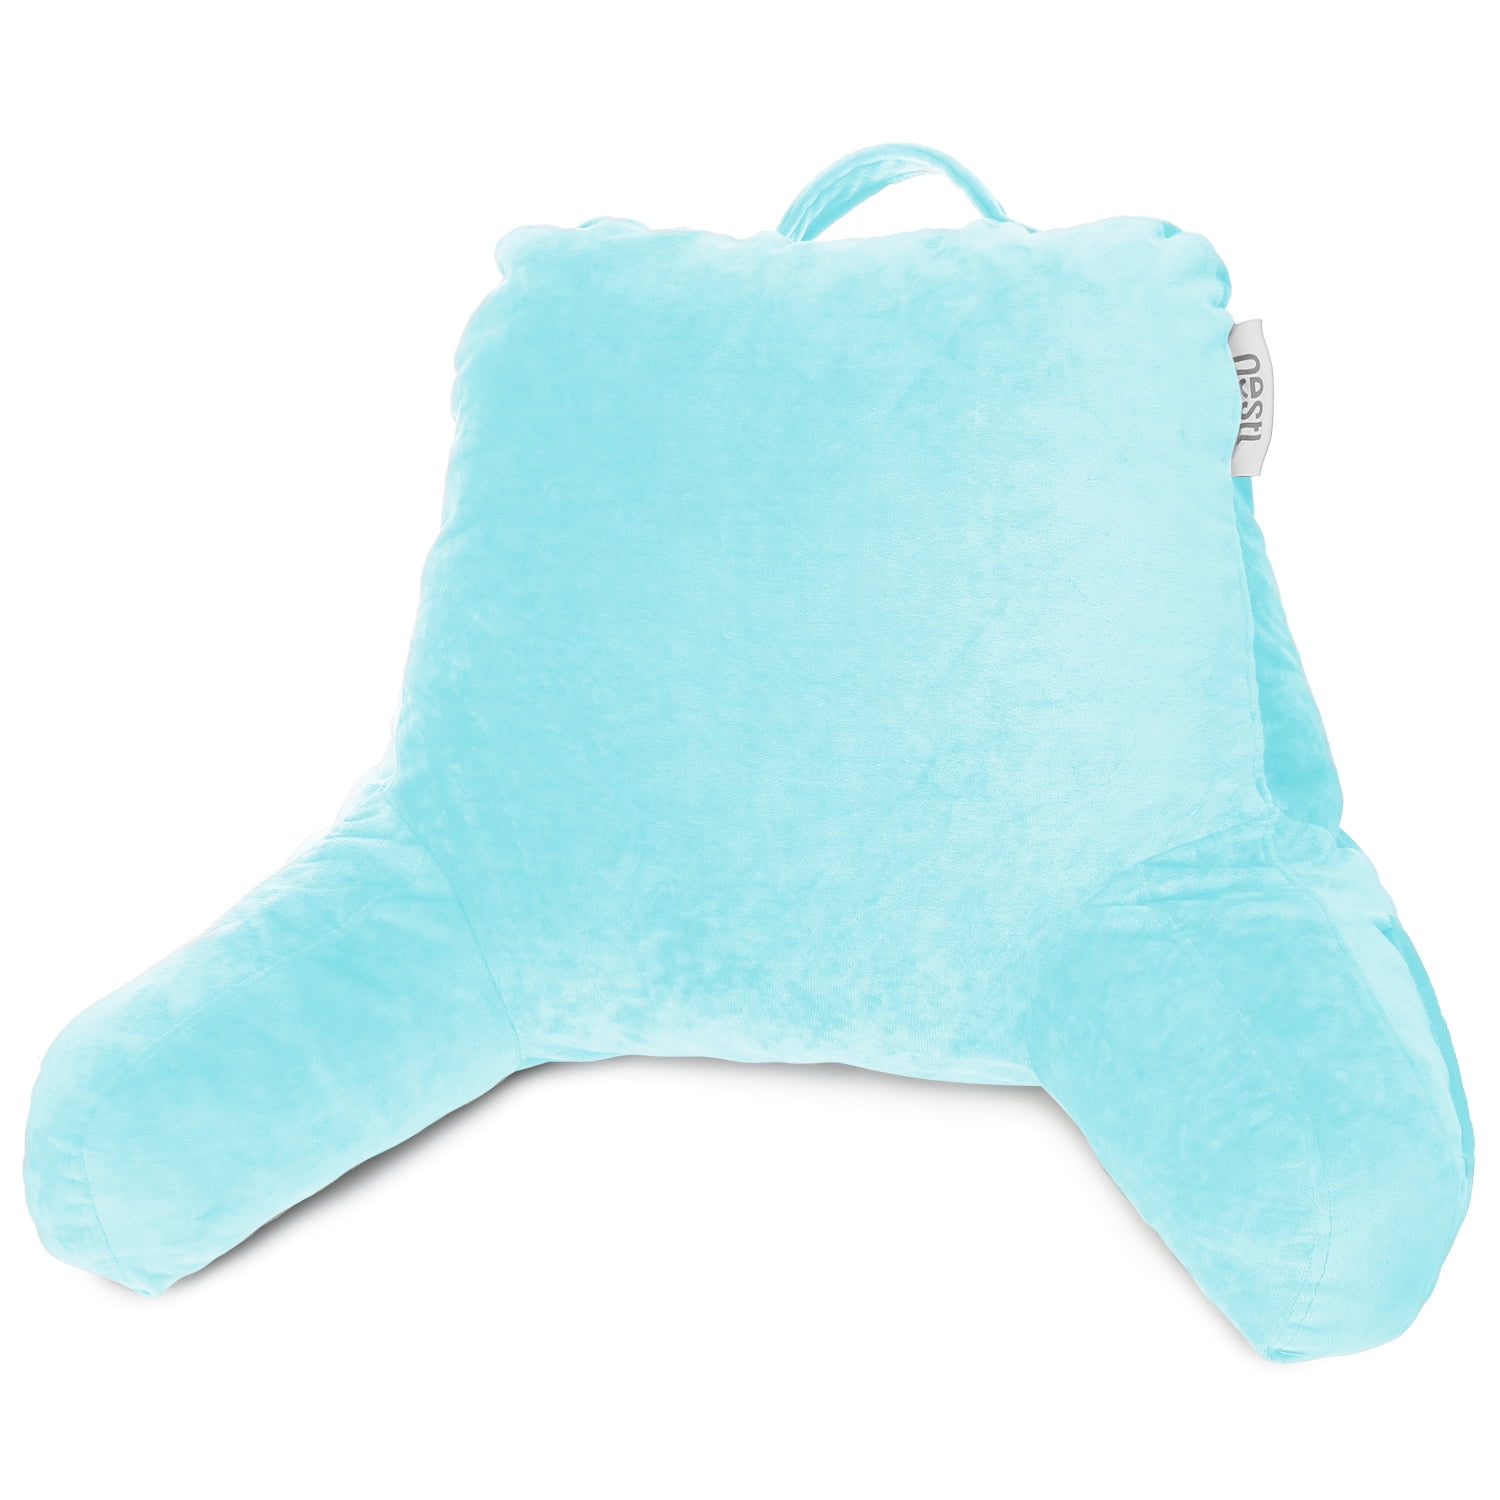 Mlotus Cartoon Girls Bedrest Pillow Kids Backrest Cushion Pillows with Arms for Reading Blue 23.6 x 12 